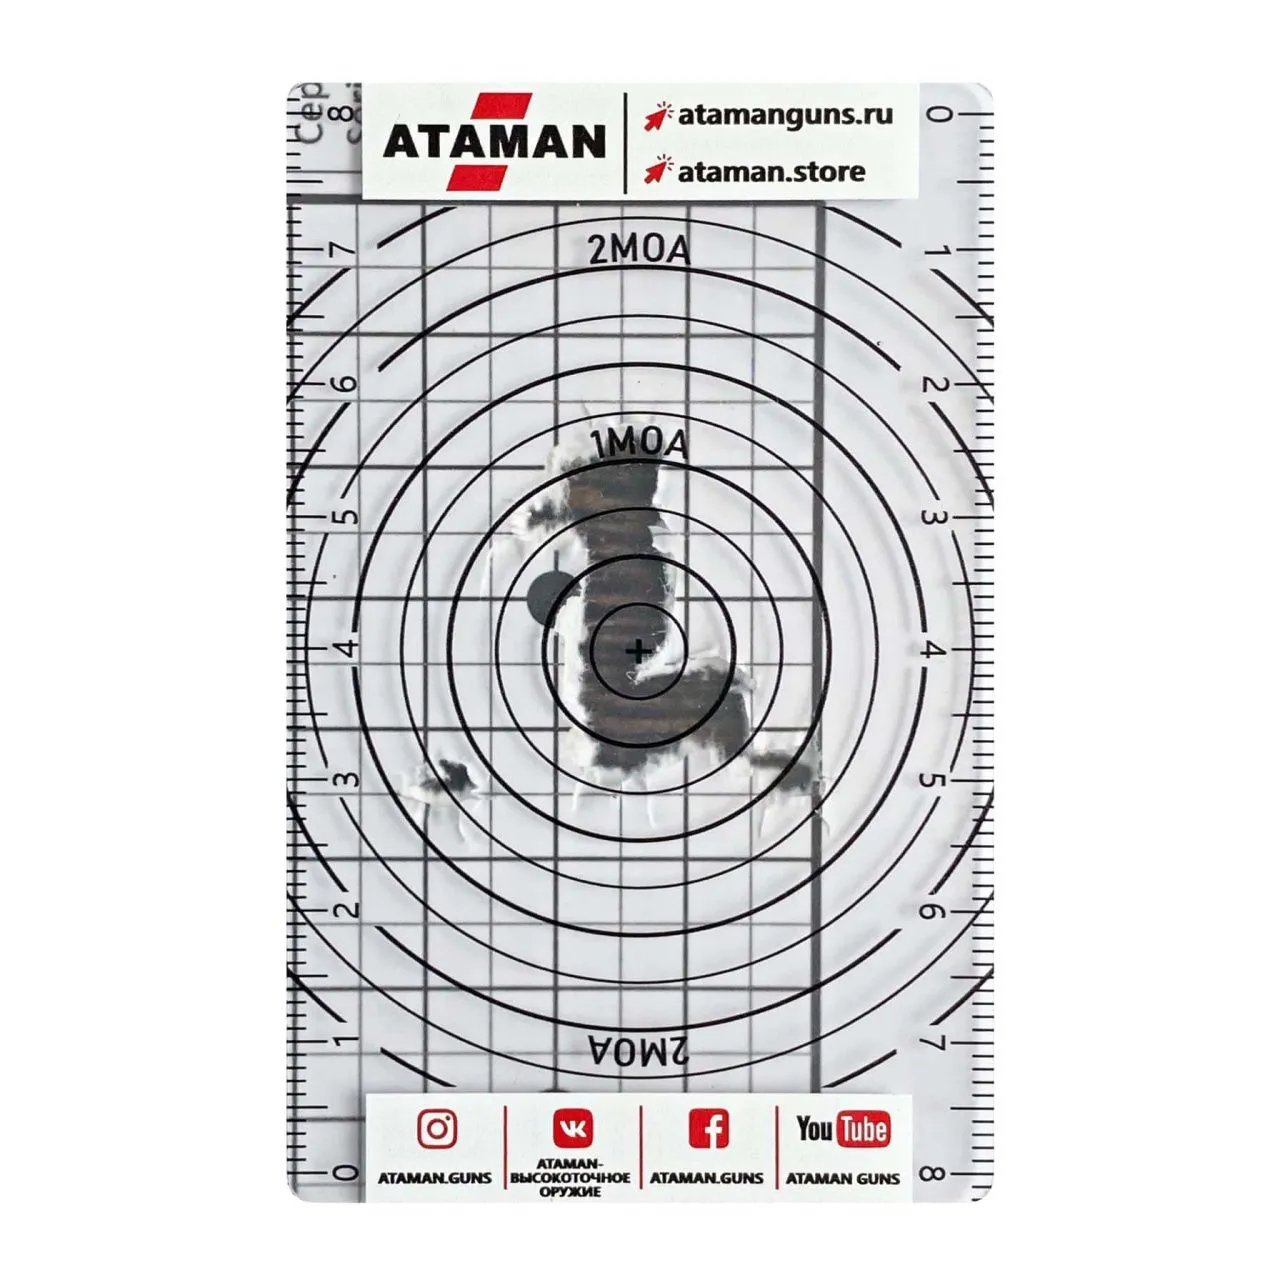 Карта измерения кучности стрельбы ATAMAN